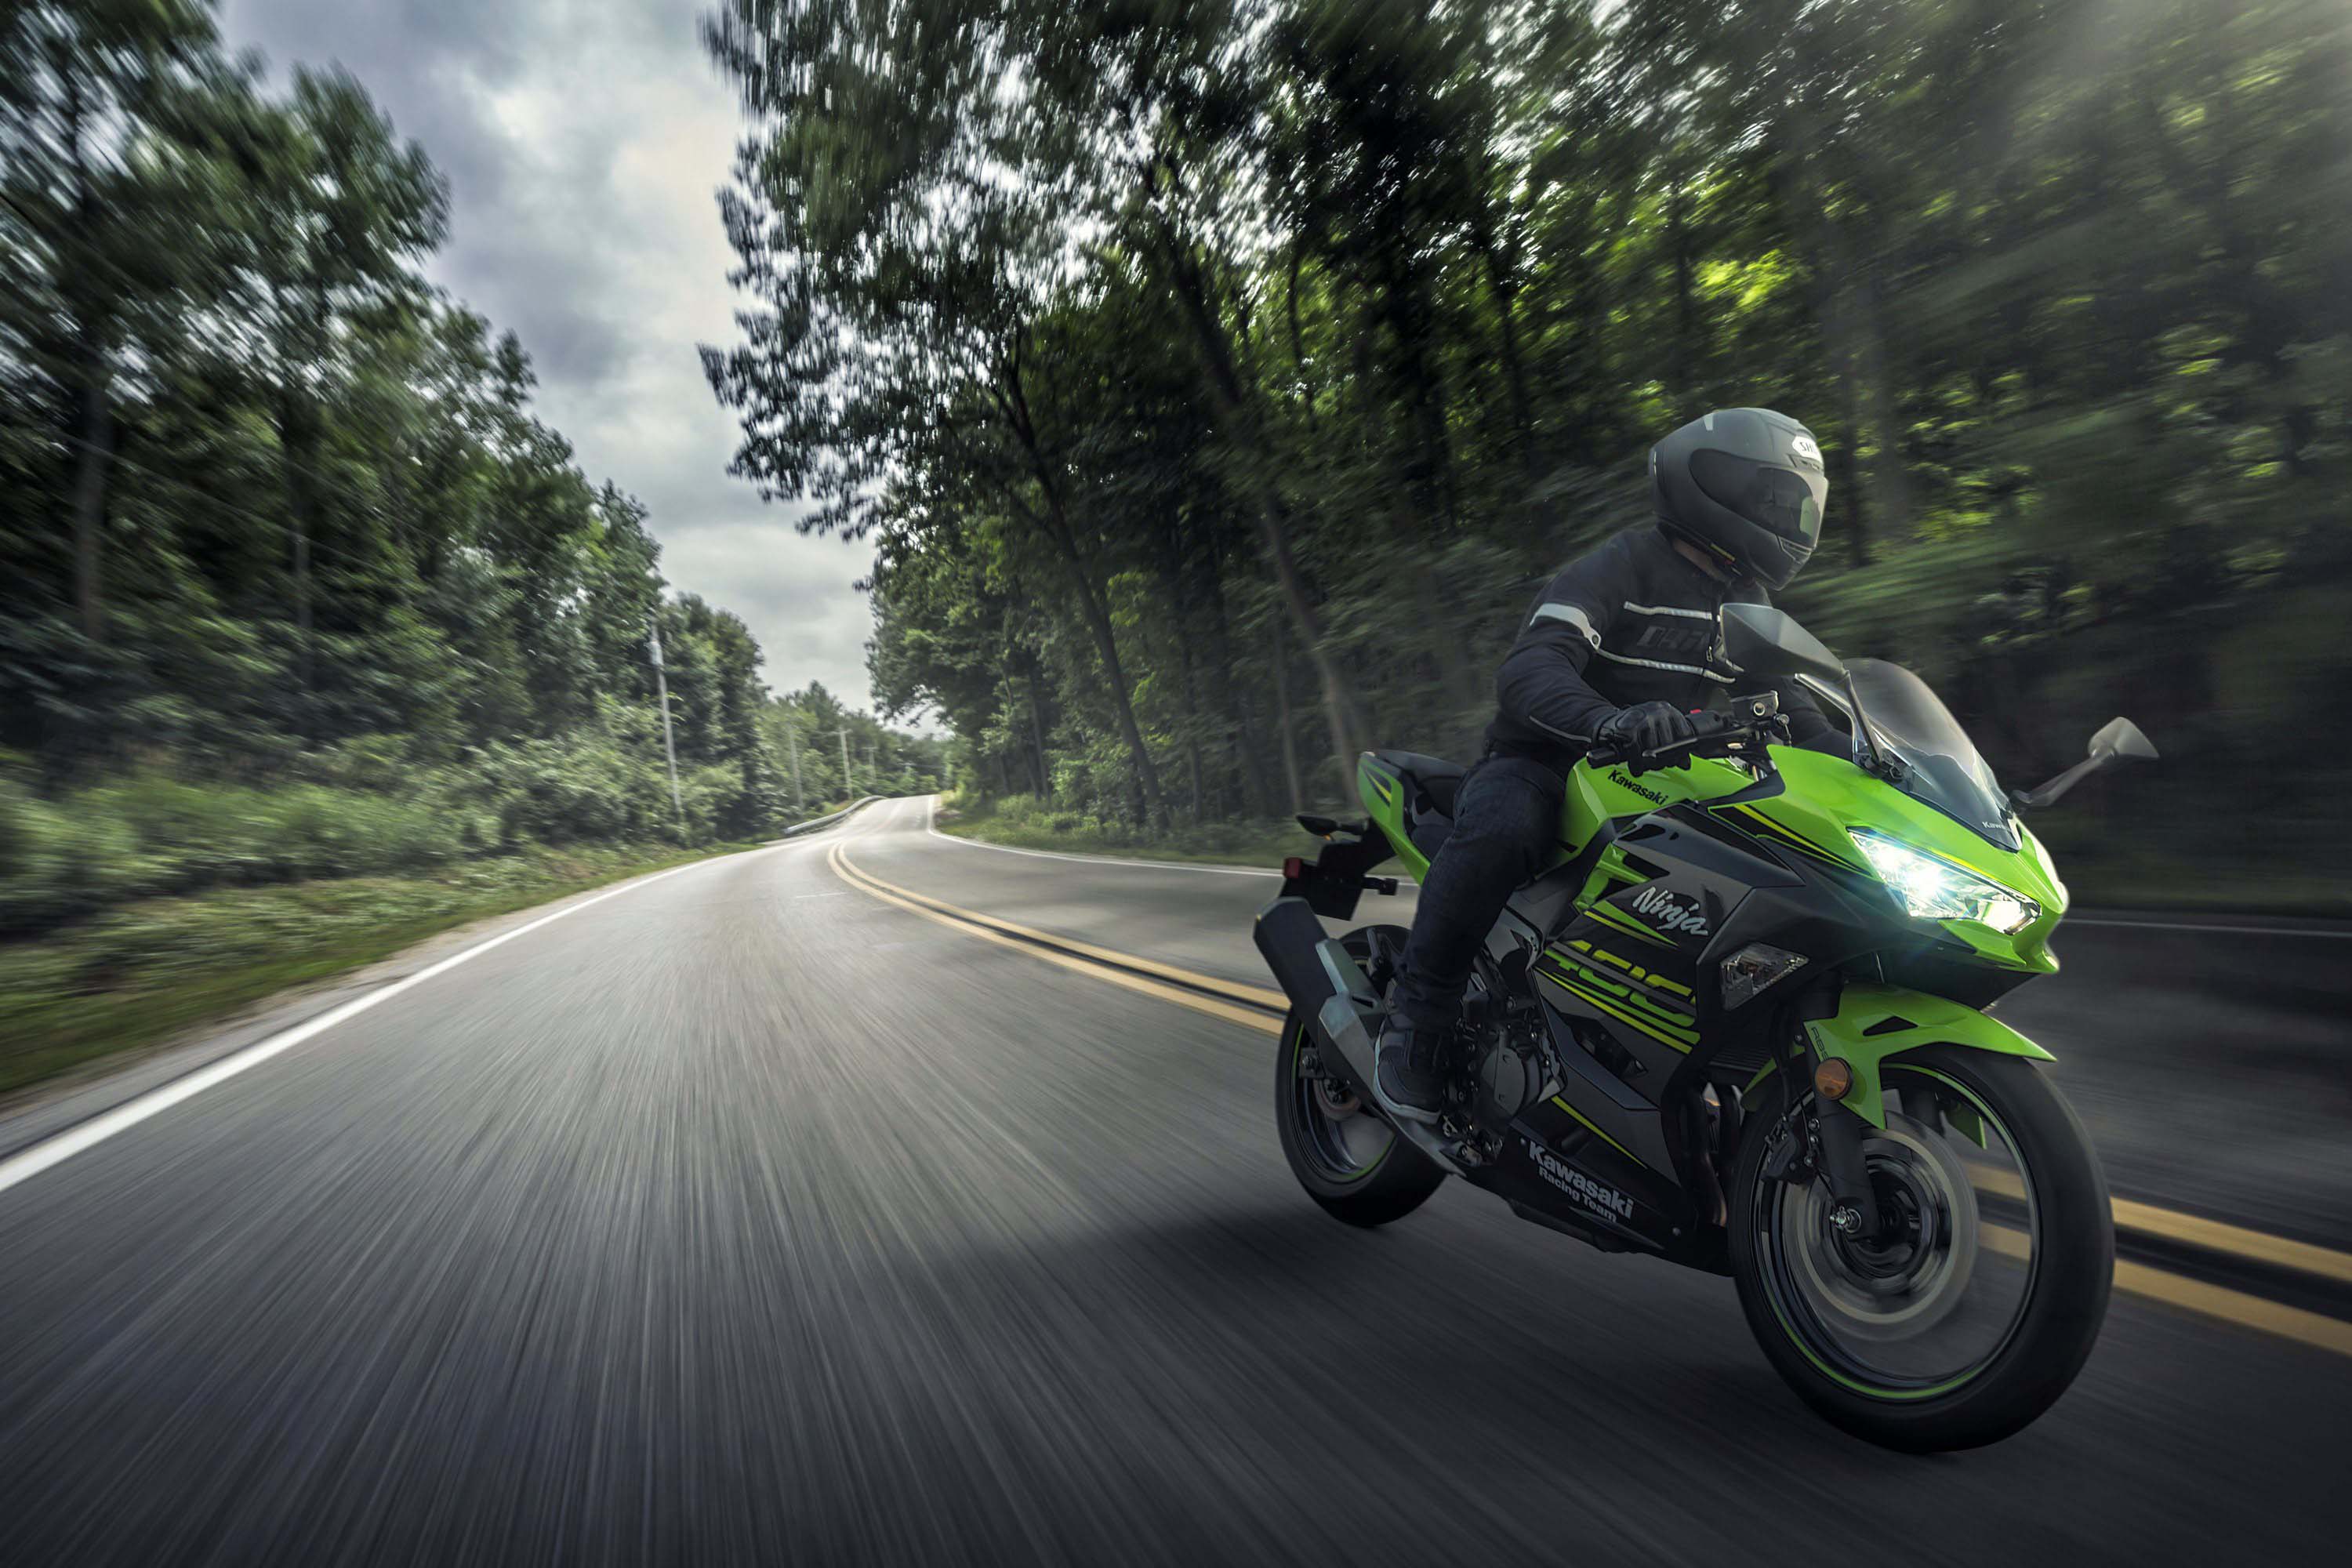 USA Gets Upgraded with the Kawasaki Ninja 400 - Asphalt & Rubber